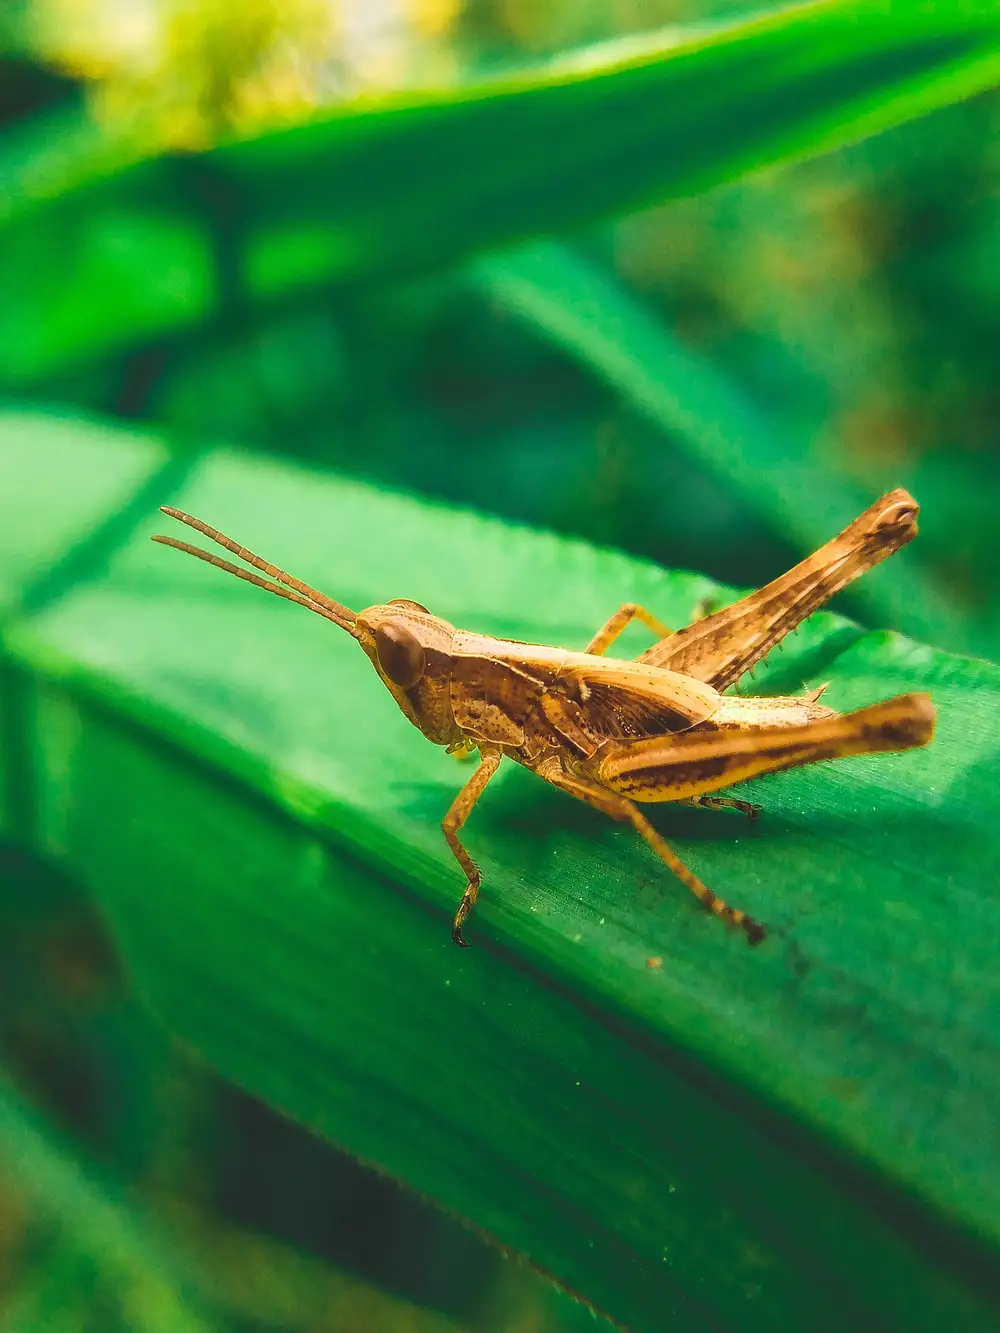 Slant-faced grasshopper